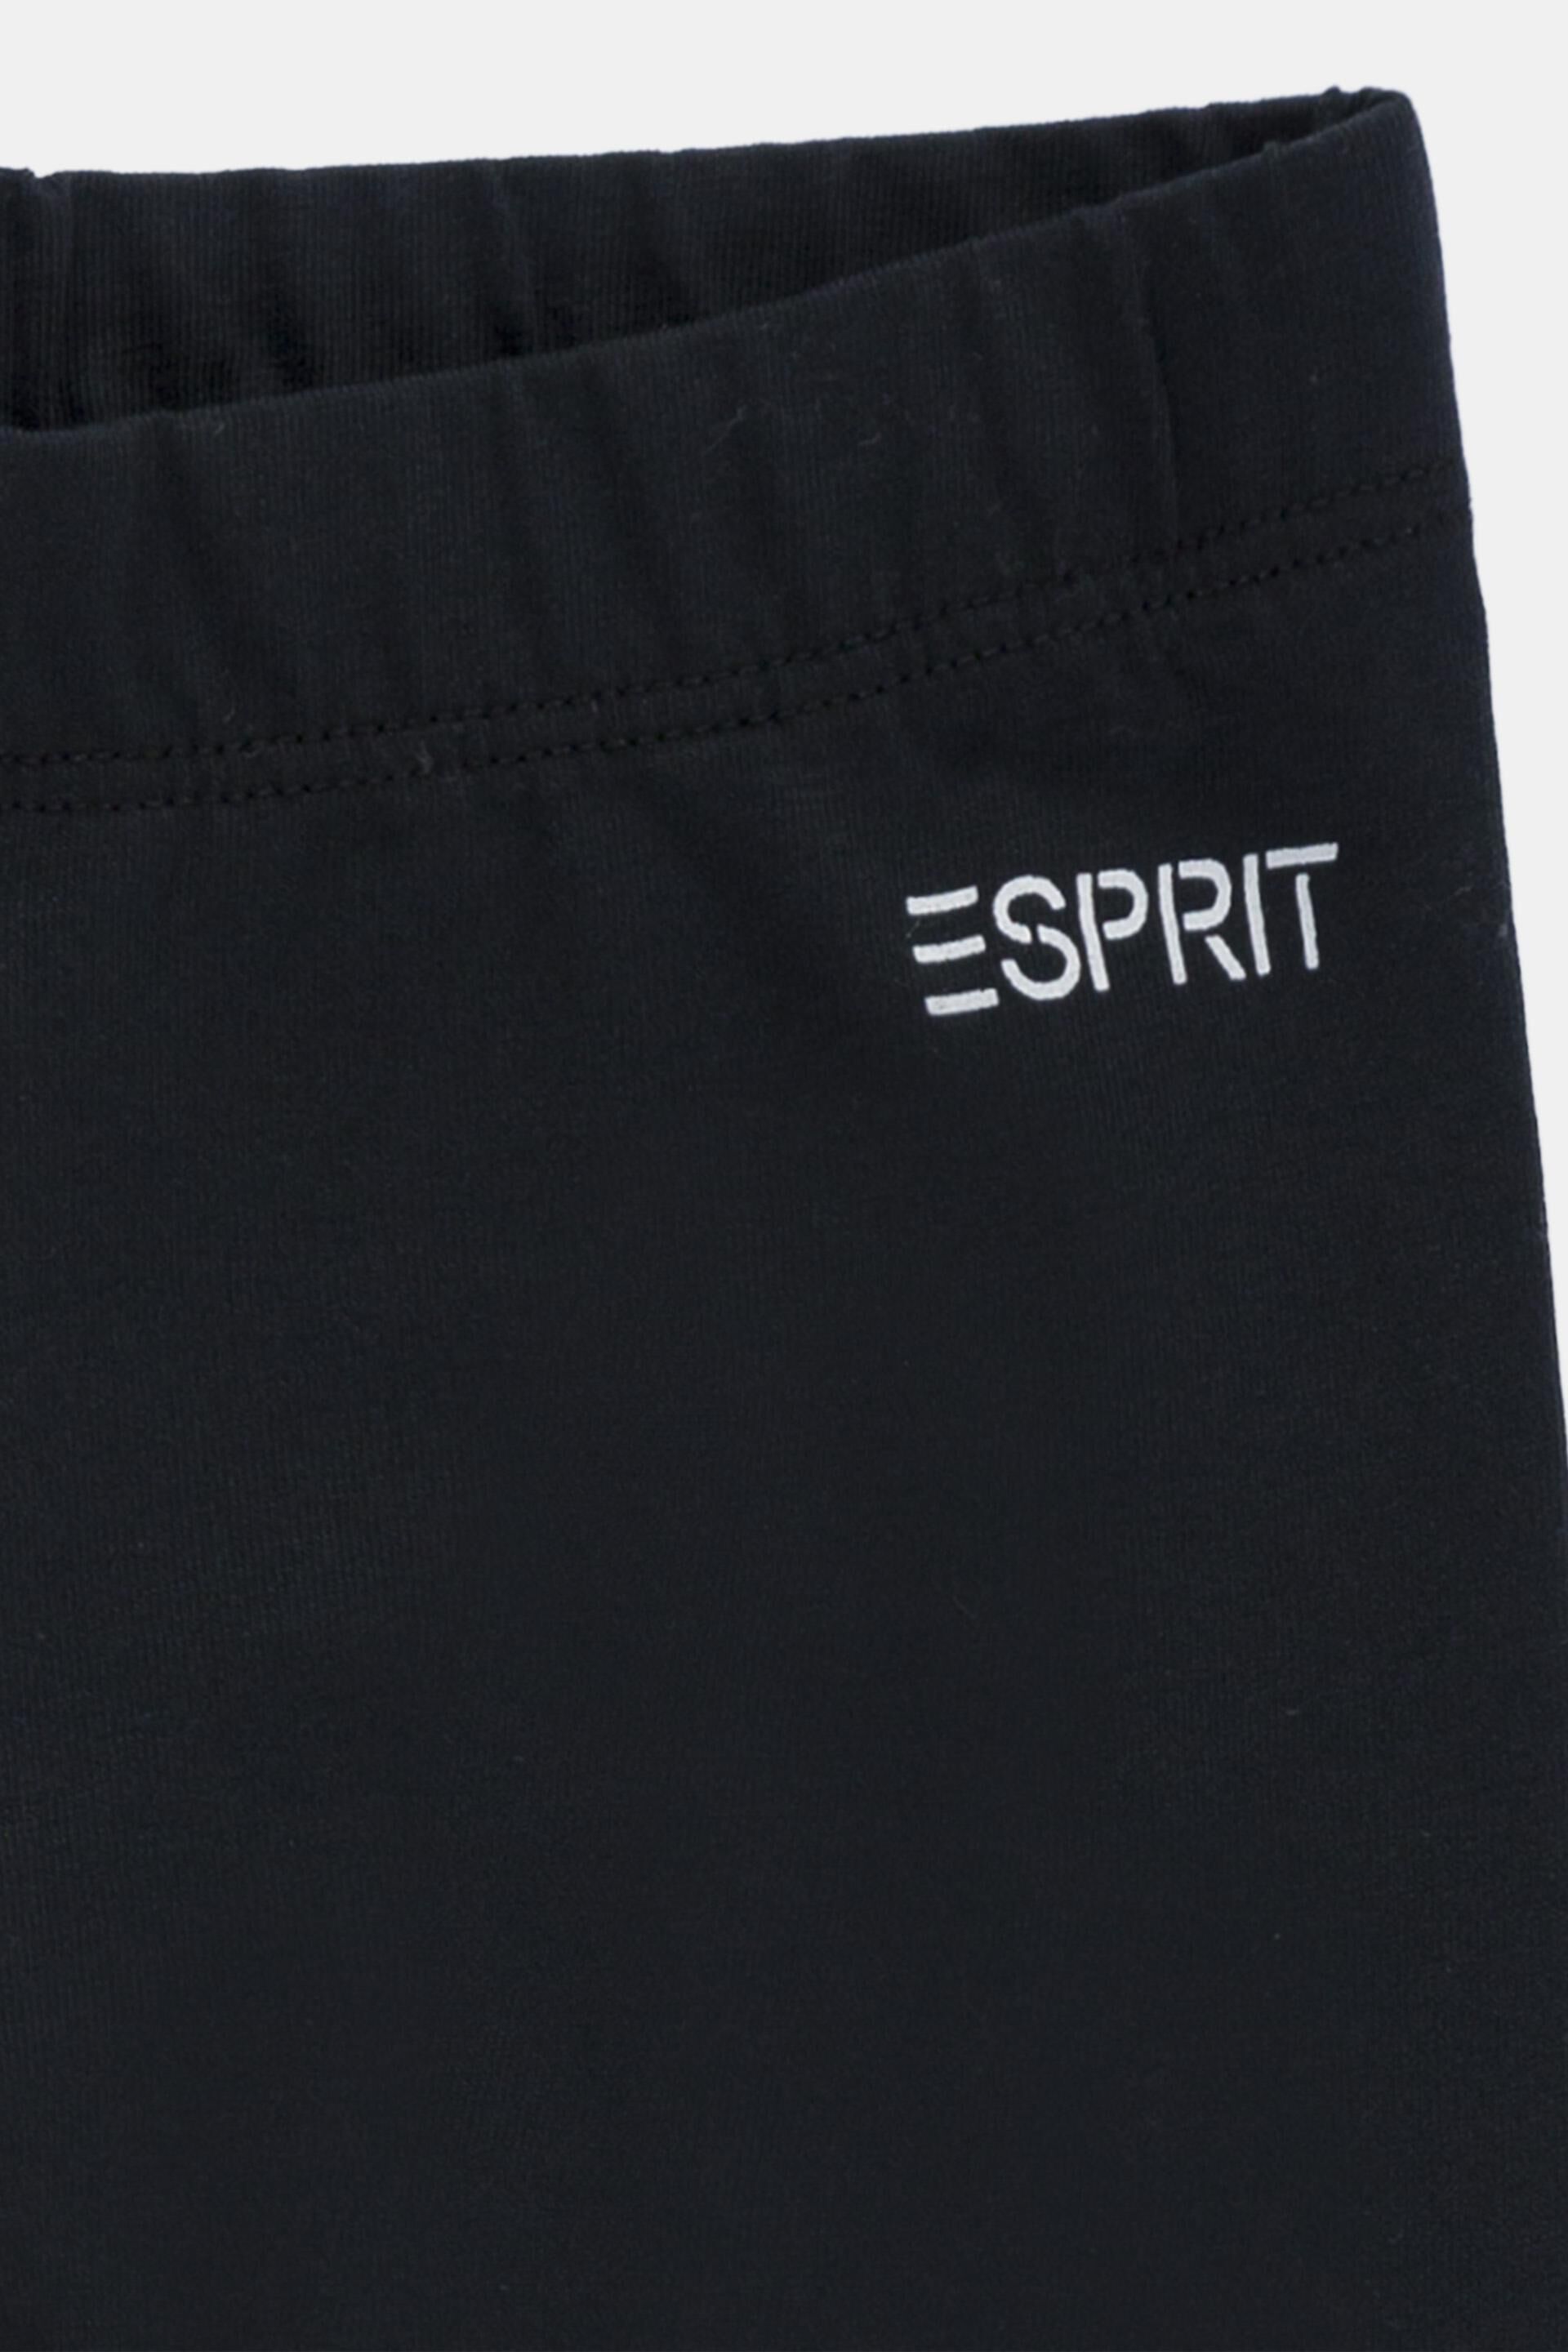 ESPRIT - Basic stretch cotton leggings at our online shop